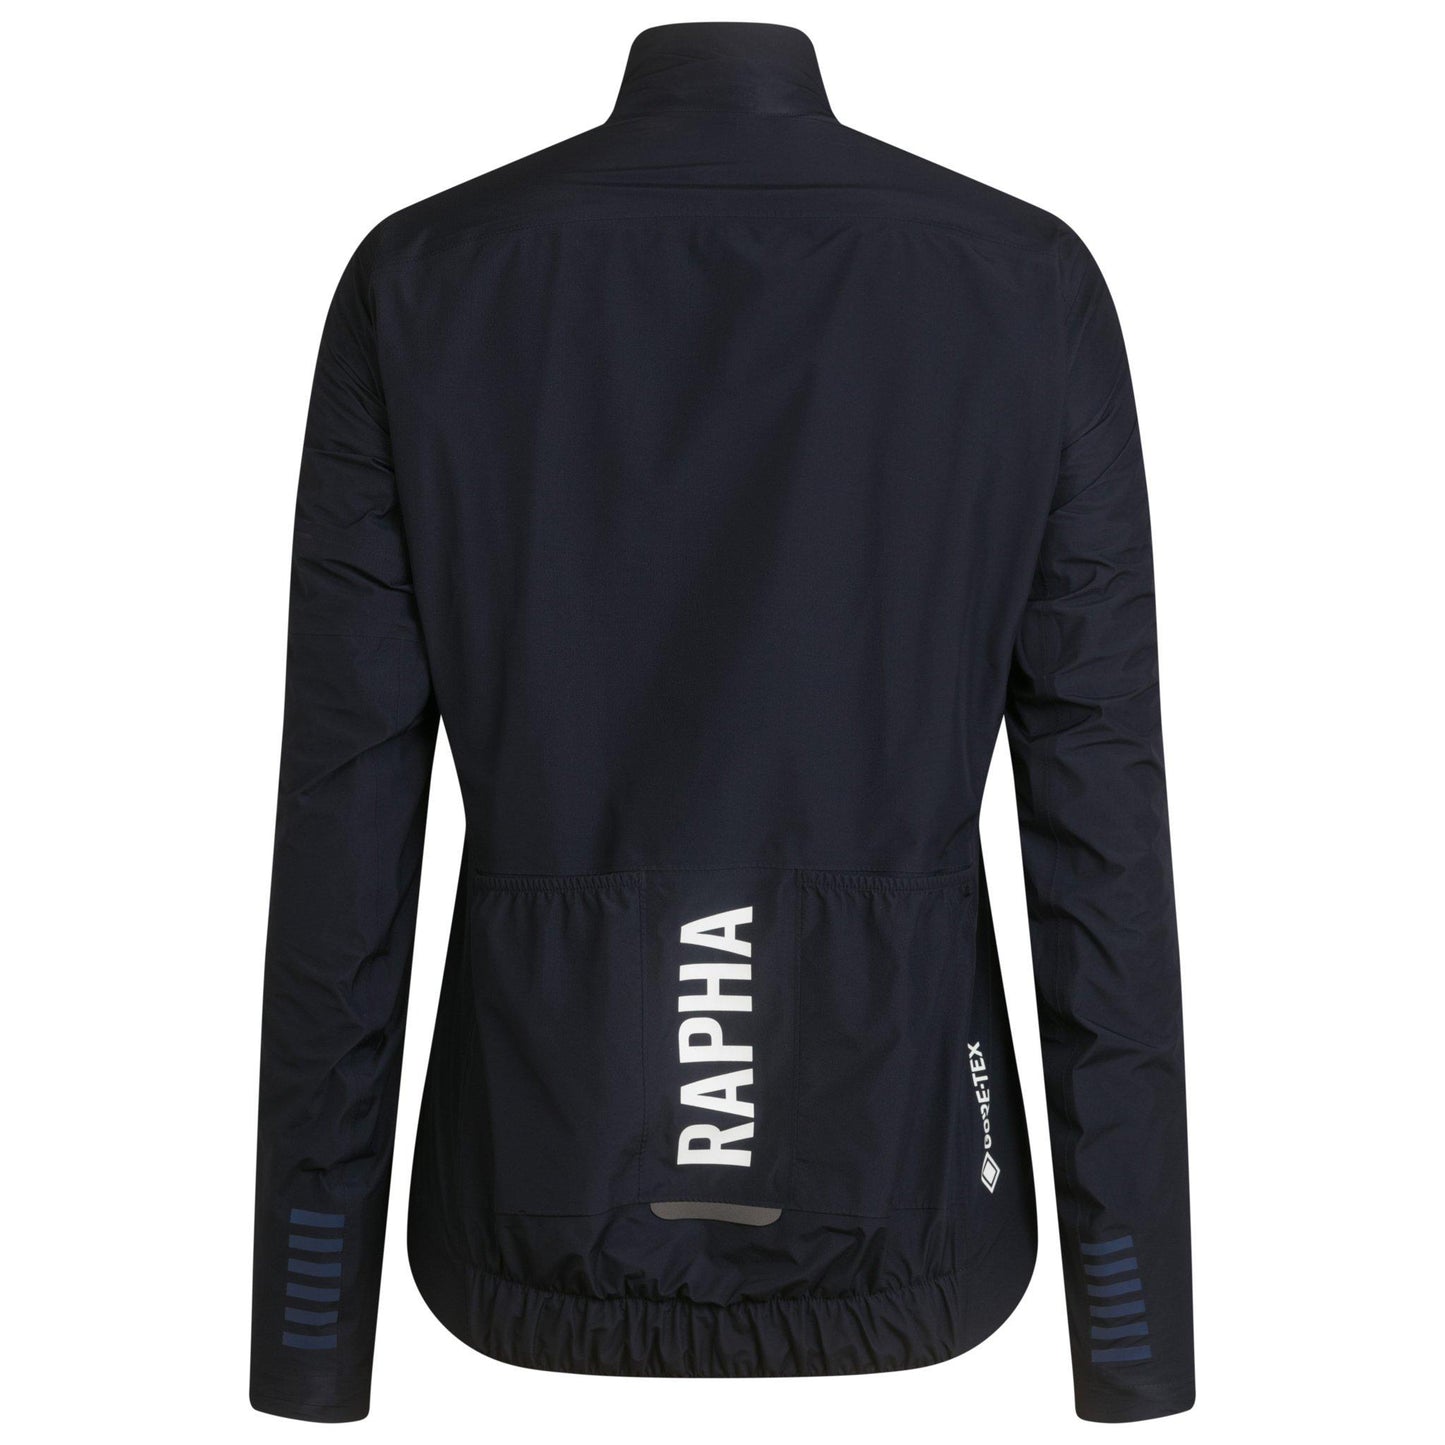 Rapha Women's Pro Team Gore-Tex Insulated Jacket, Dark Navy/White